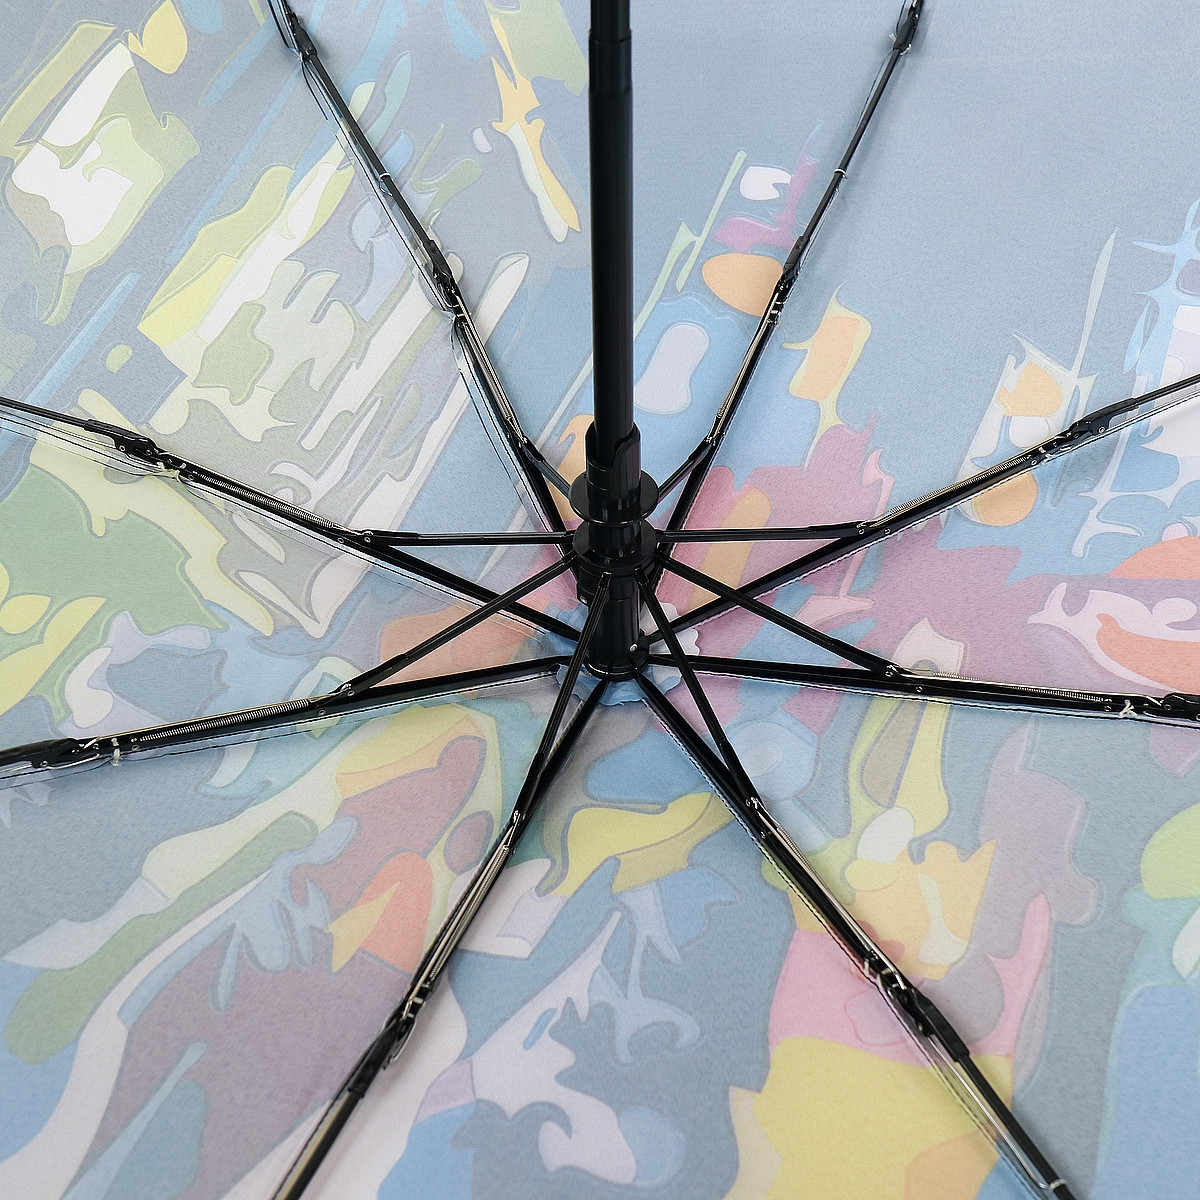 Жіноча складана парасолька повний автомат Trust 103 см різнобарвна - фото 4